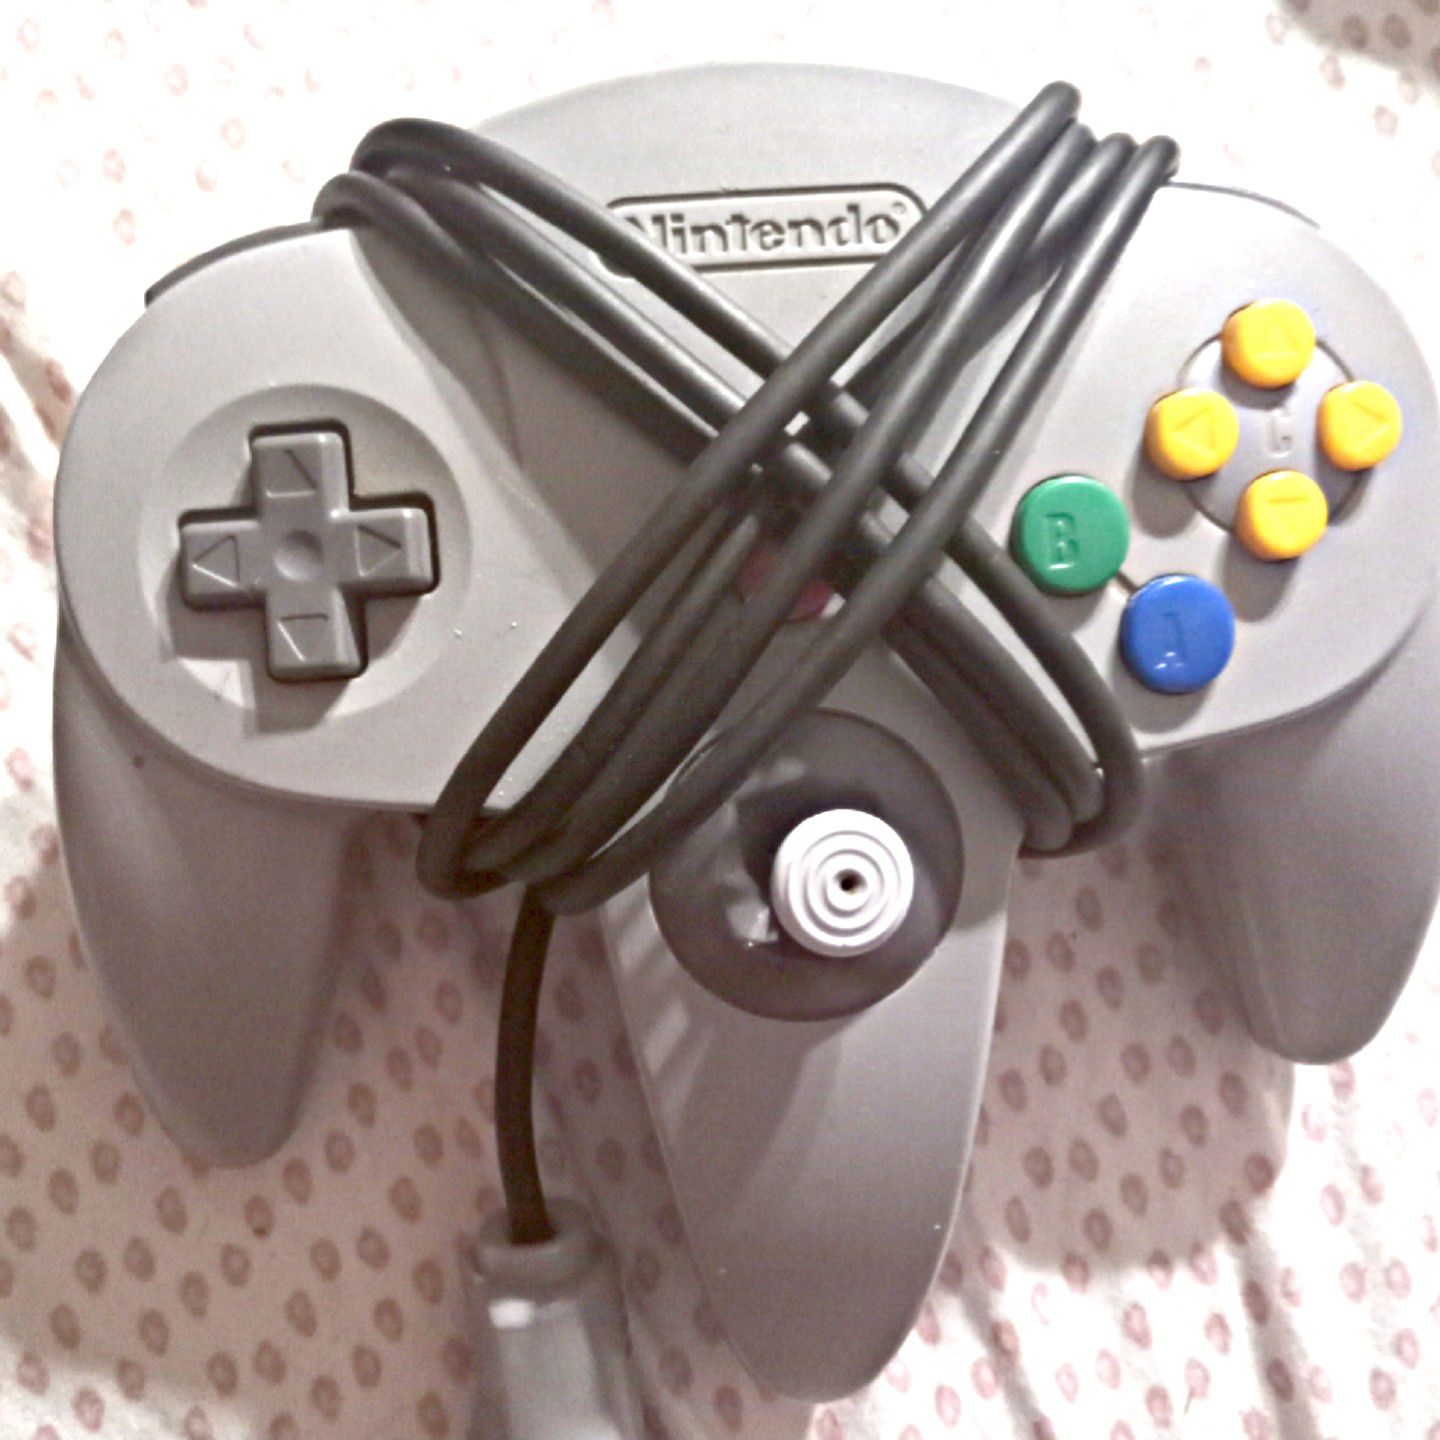 Nintendo 64 remote control